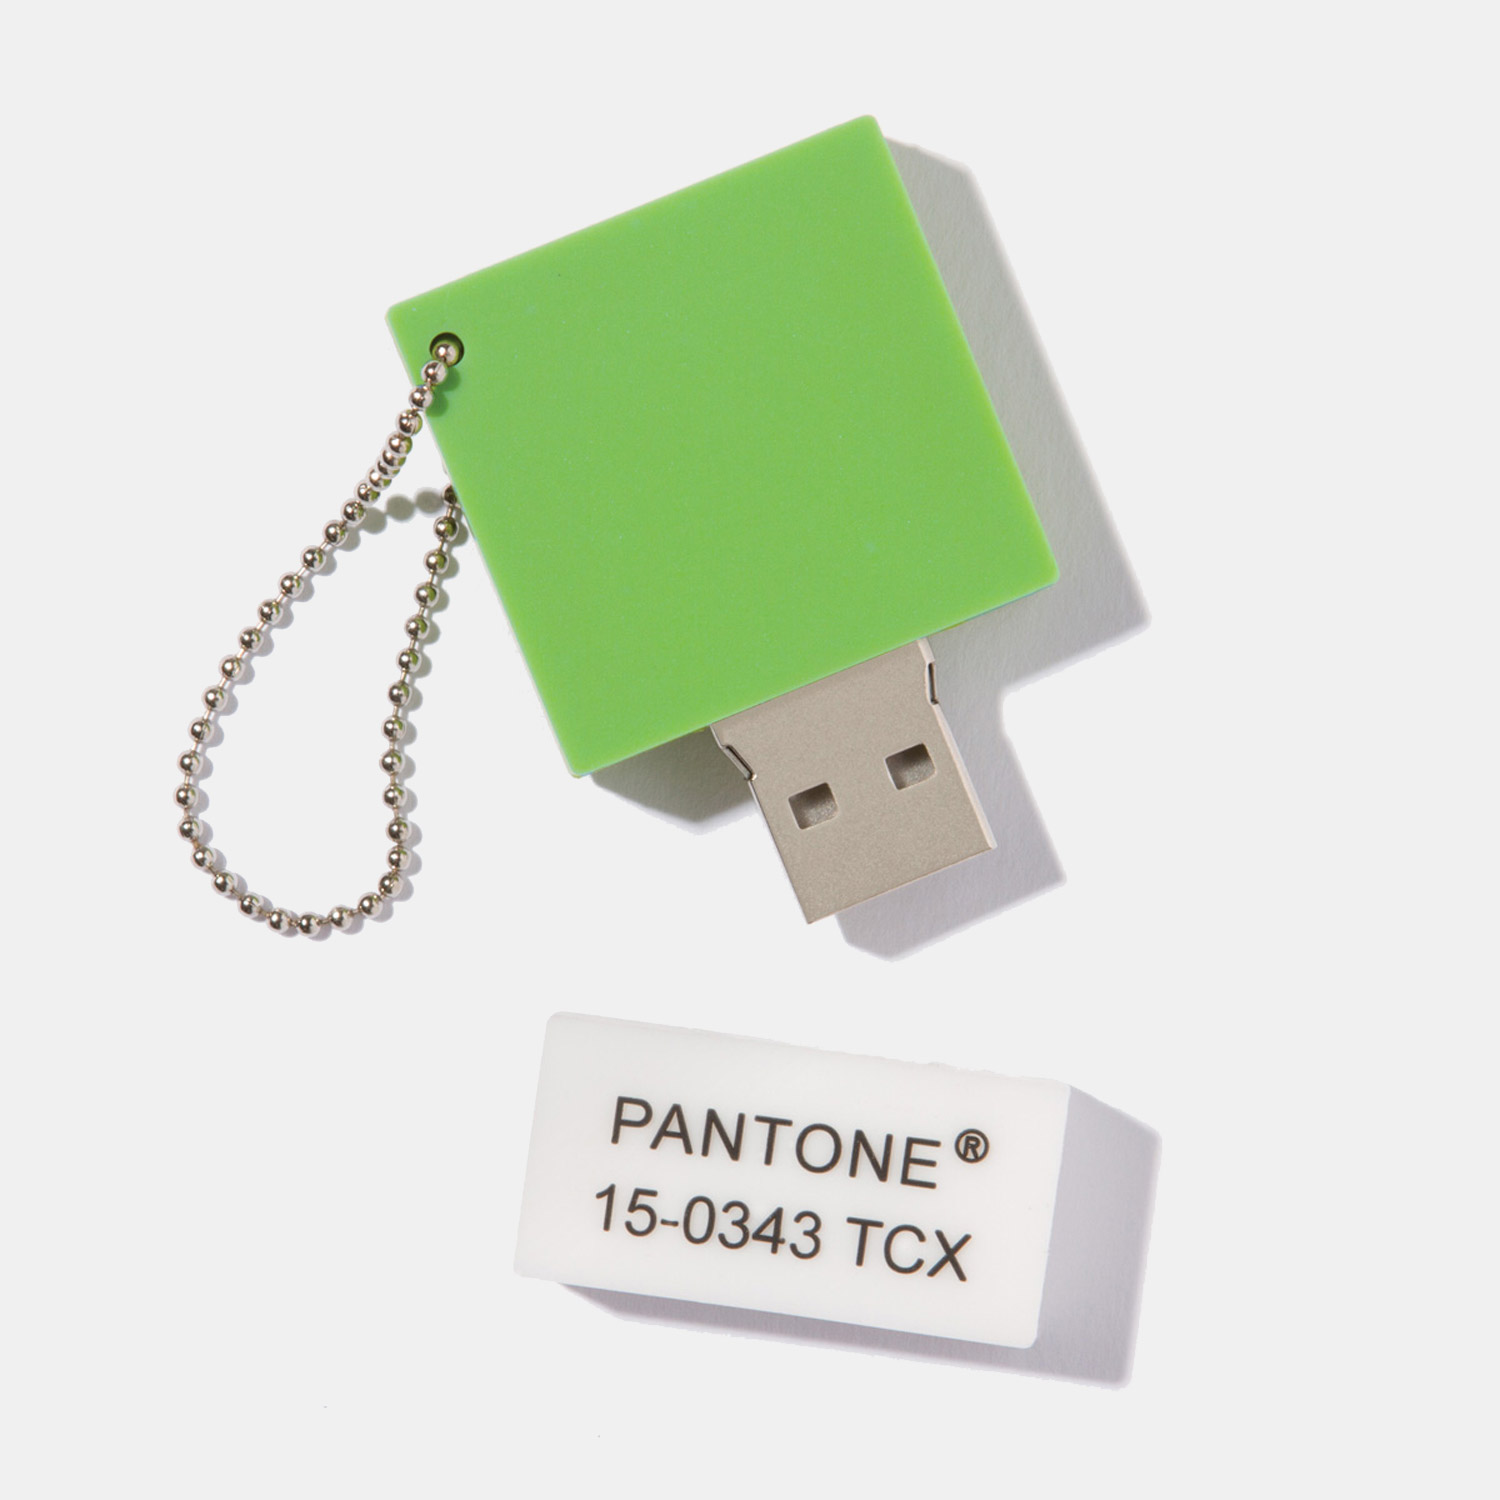 Accesorios de oficina para diseñadores y amantes de Pantone